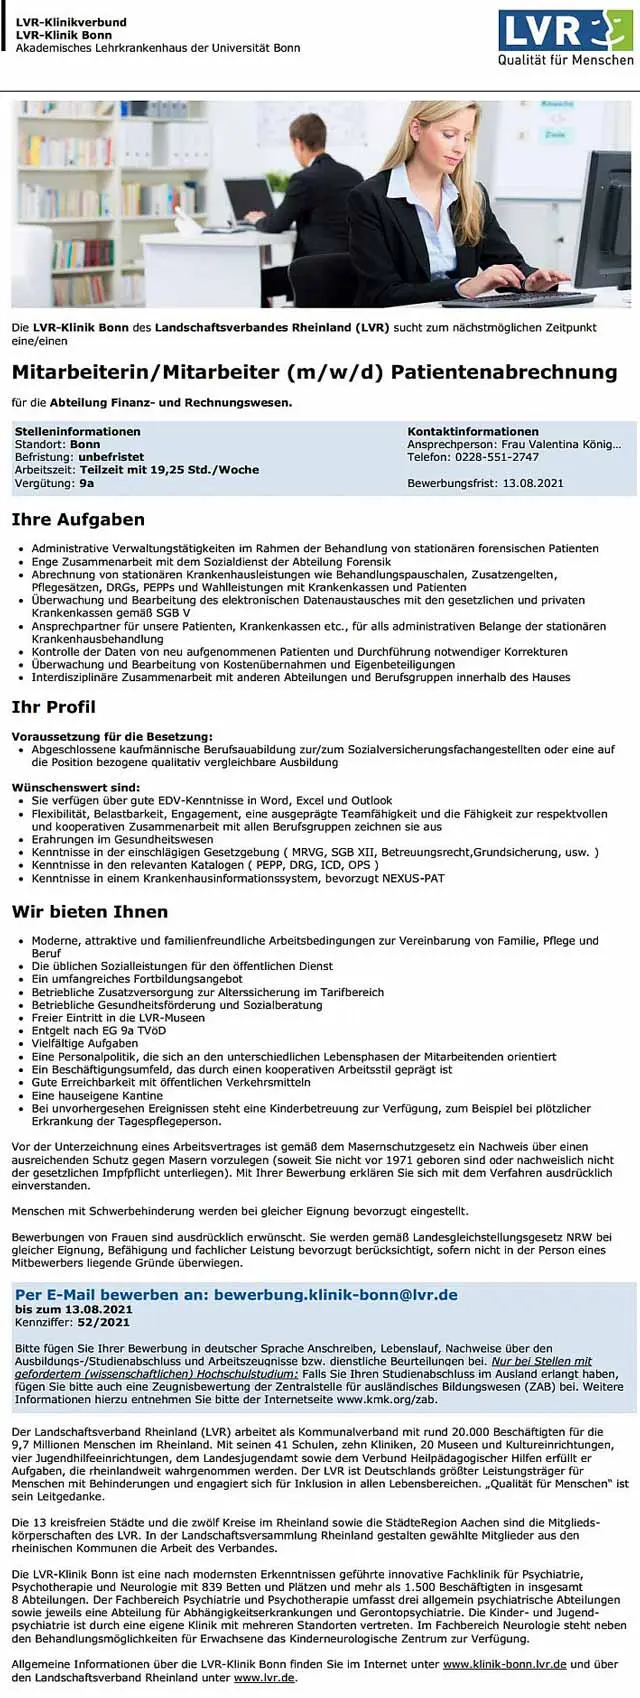 LVR-Klinik Bonn: Mitarbeiter Patientenabrechnung (m/w/d)